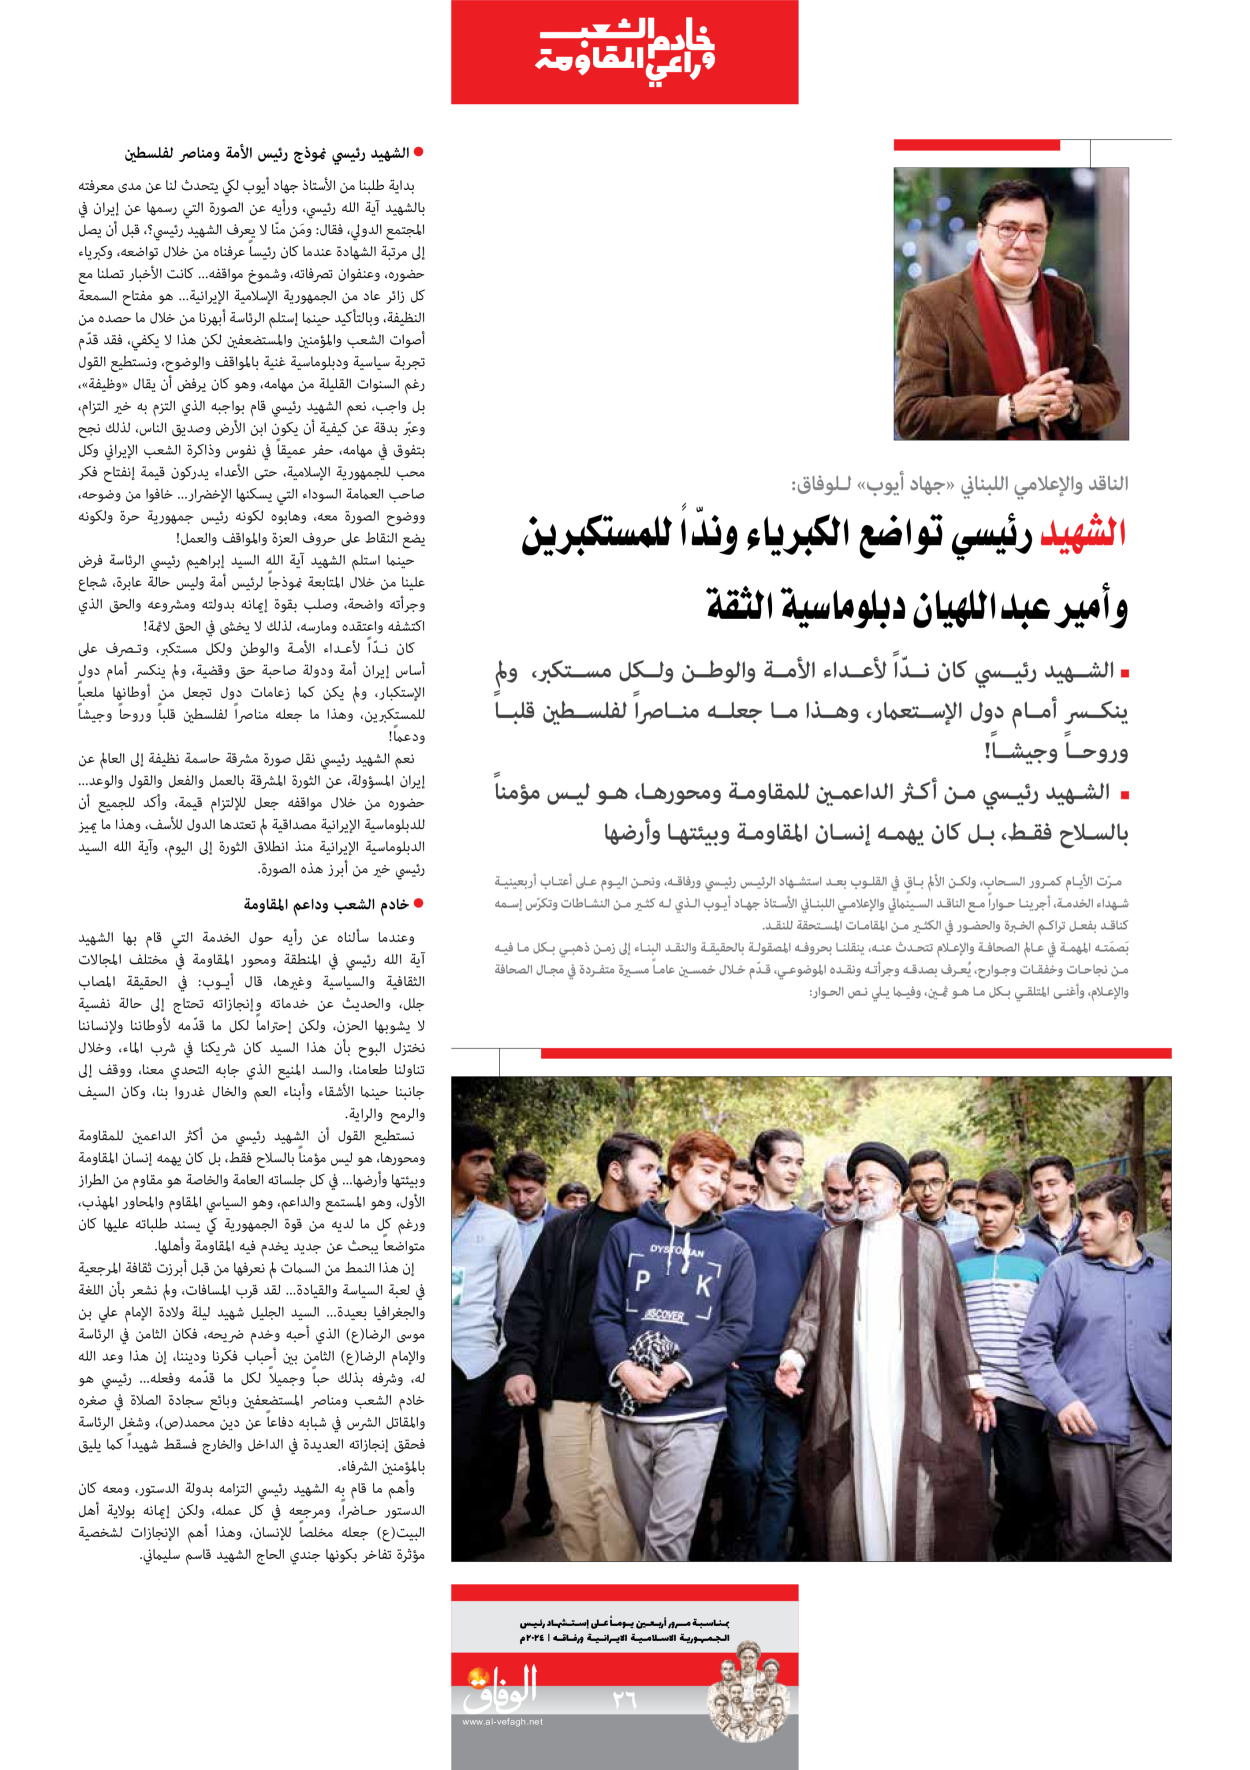 صحیفة ایران الدولیة الوفاق - ملحق ویژه نامه چهلم شهید رییسی - ٢٩ يونيو ٢٠٢٤ - الصفحة ۲٦